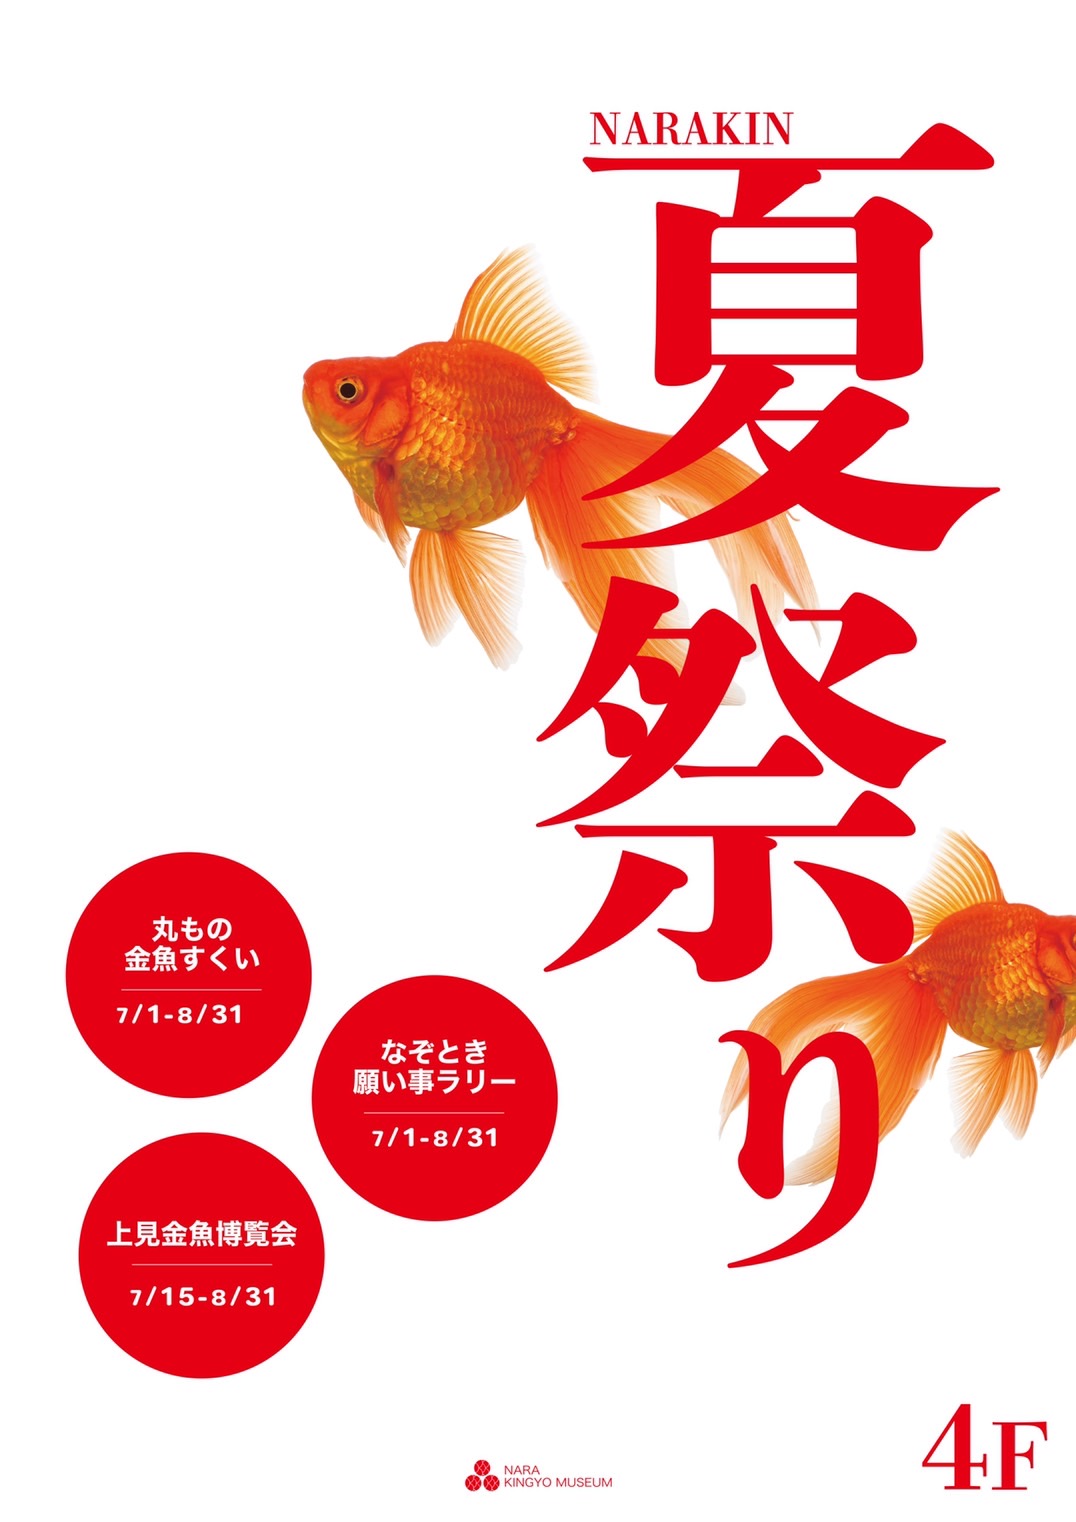 金魚の町奈良県で 雨の日でも楽しめる夏祭り 金魚すくい 七夕 特別展示を伴った Narakin 夏祭り 22 が開催 株式会社uws Entertainmentのプレスリリース